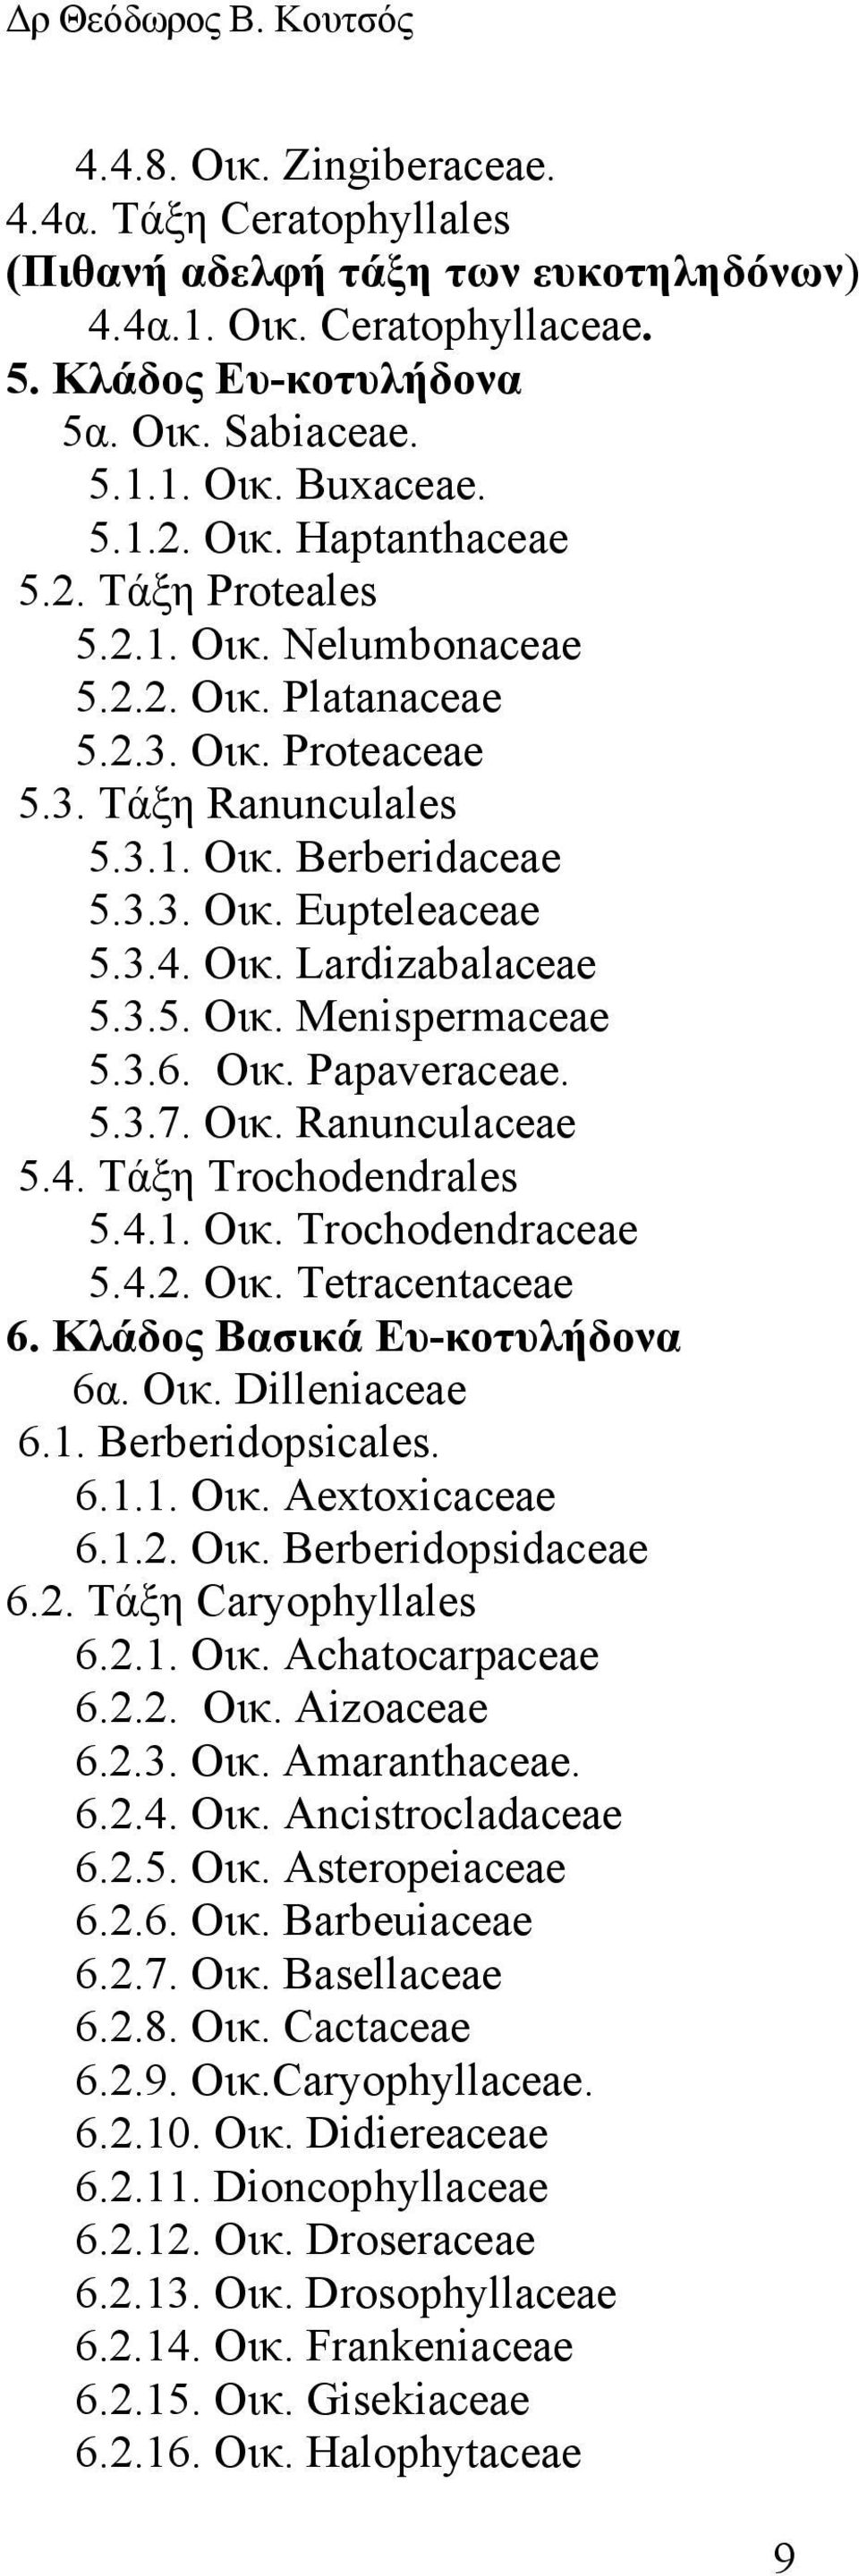 3.5. Οικ. Menispermaceae 5.3.6. Οικ. Papaveraceae. 5.3.7. Οικ. Ranunculaceae 5.4. Tάξη Trochodendrales 5.4.1. Οικ. Trochodendraceae 5.4.2. Οικ. Tetracentaceae 6. Kλάδος Βασικά Ευ-κοτυλήδονα 6α. Οικ. Dilleniaceae 6.